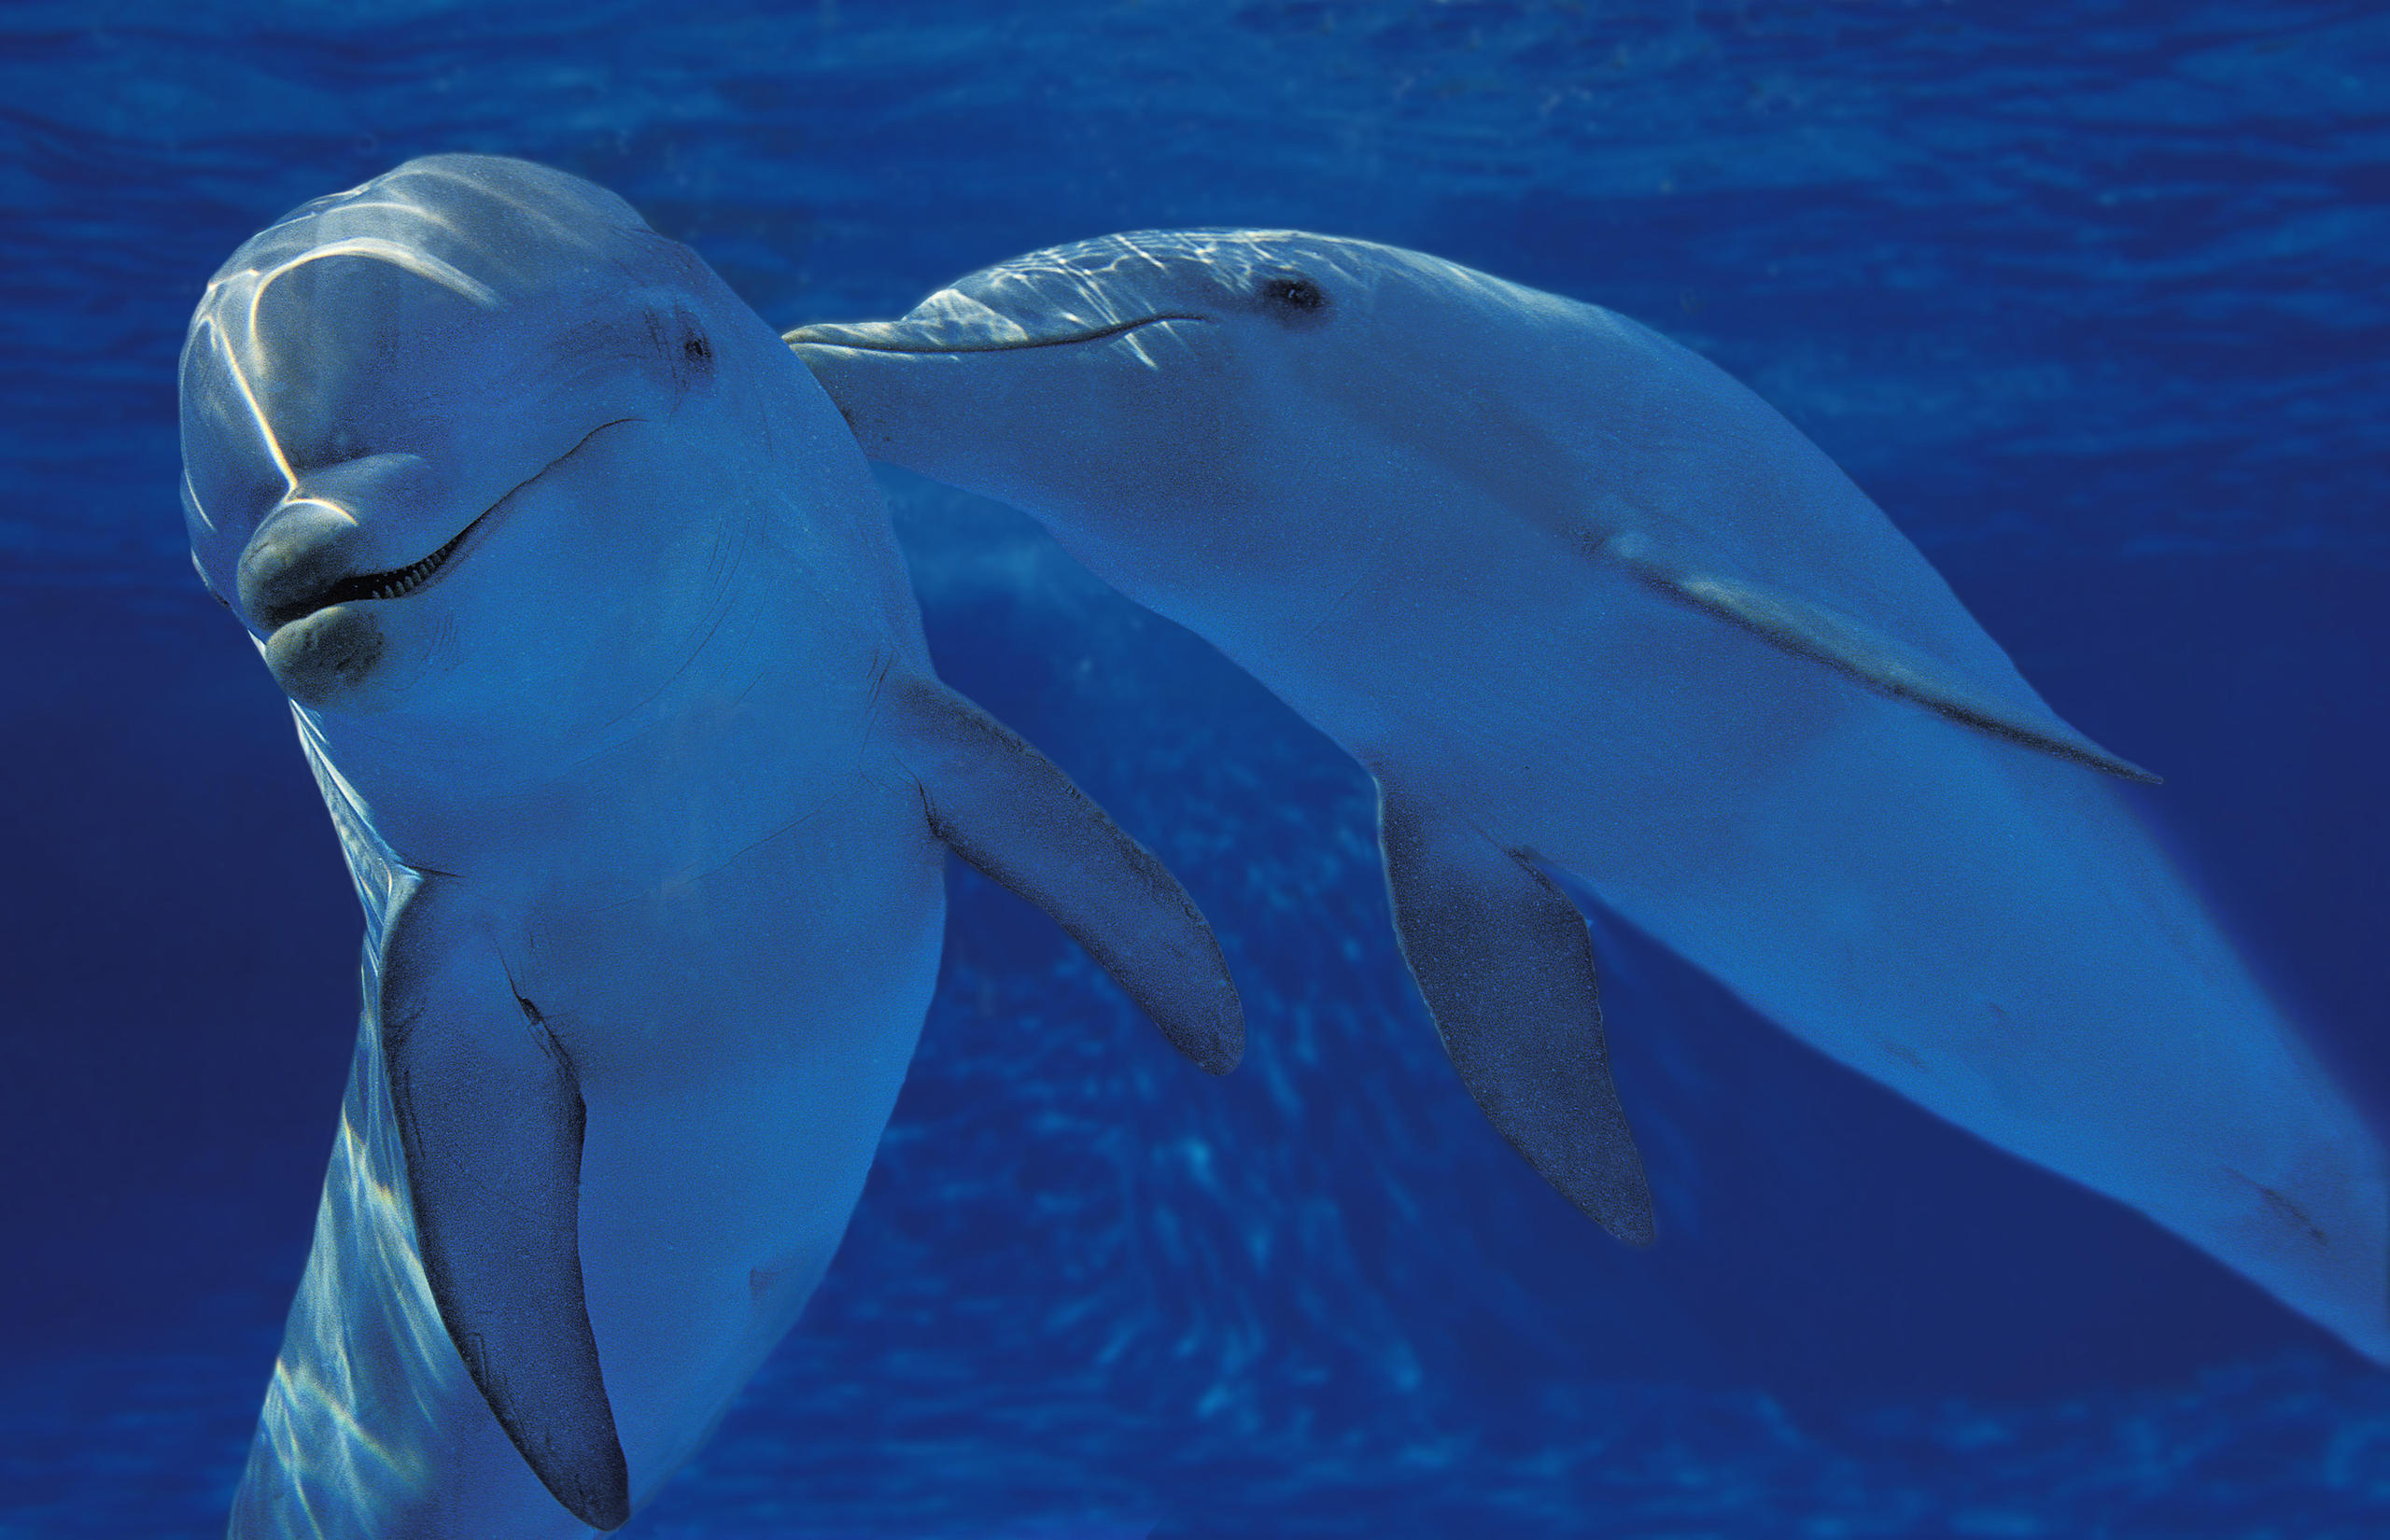 من بين الدلافين قارورية الأنف، هناك العديد من ثنائيي الجنس ويدخل البعض في علاقات مثلية تدوم طويلاً.